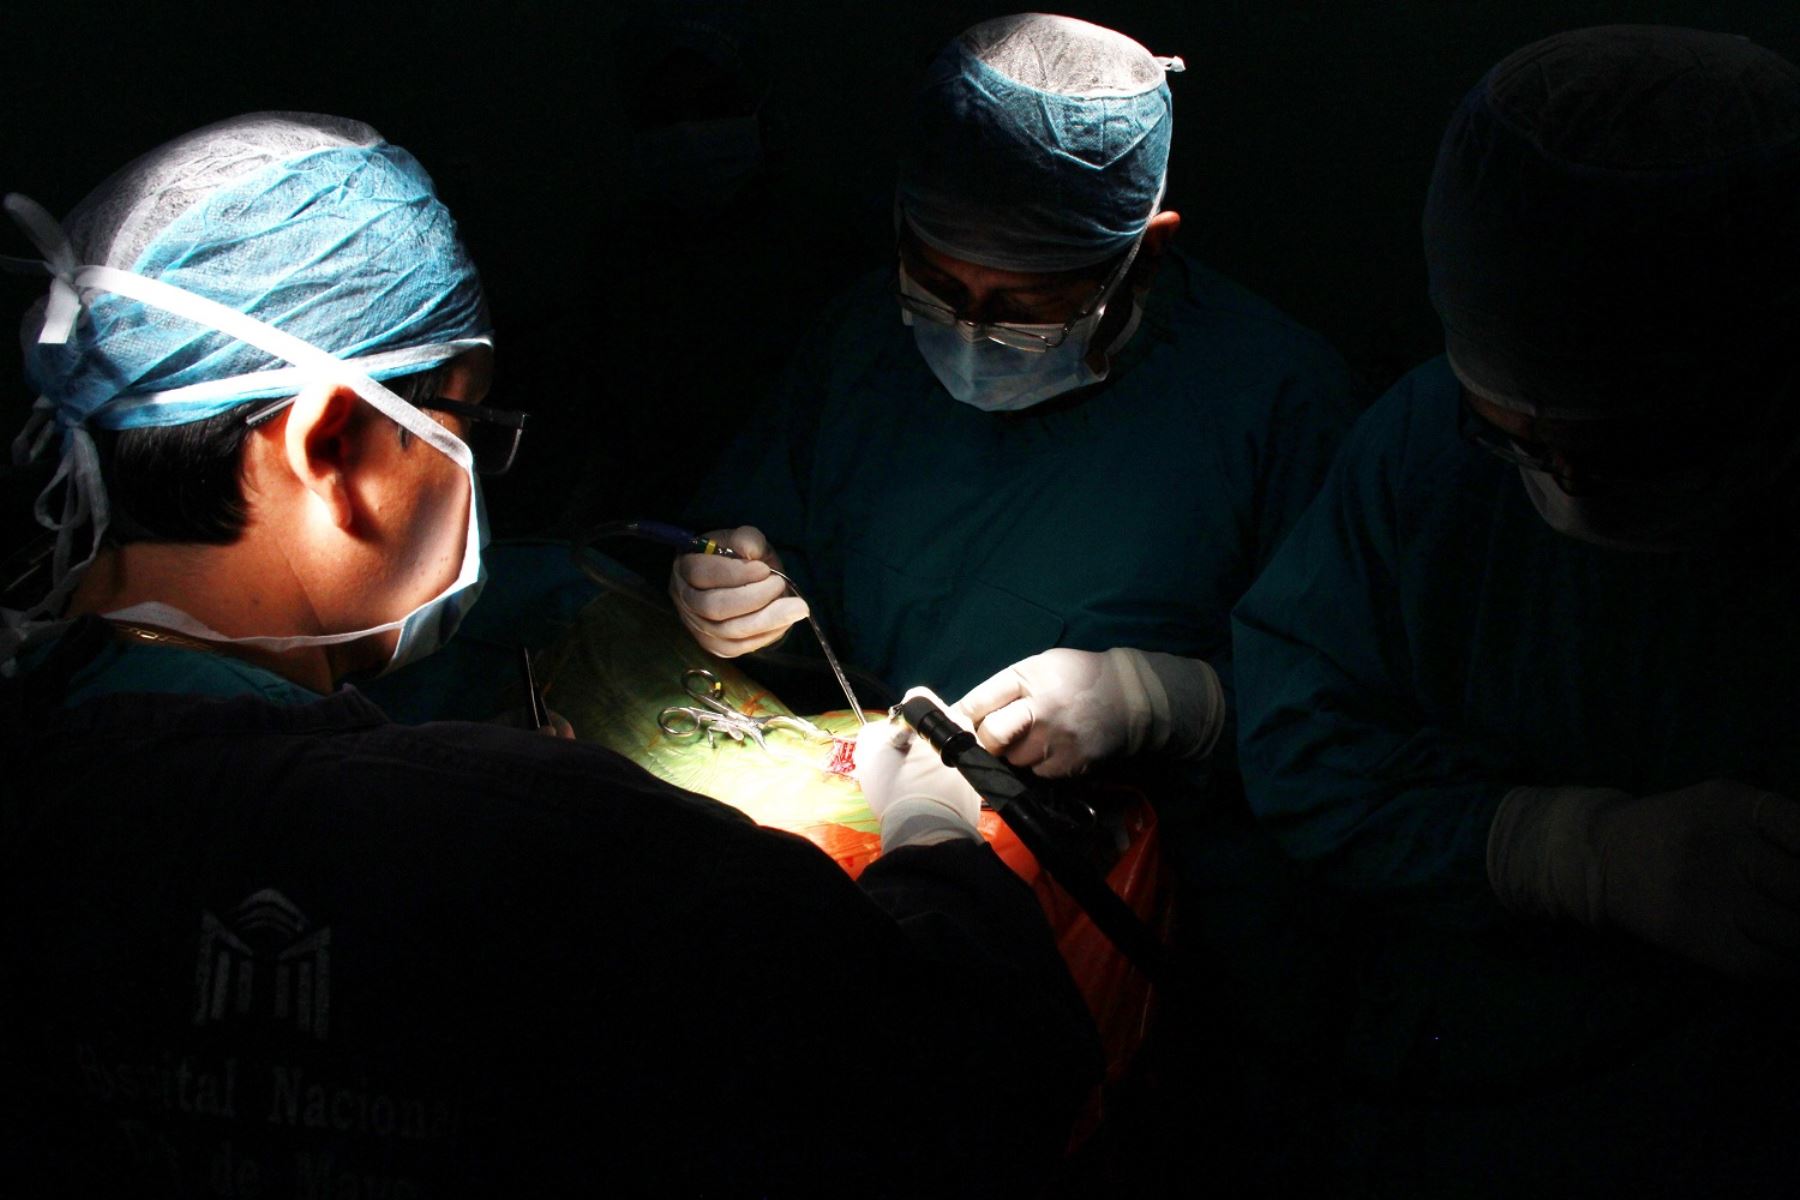 Intervendrán a pacientes de escasos recursos con lesiones cerebrales complejas. Foto: Andina/Difusión